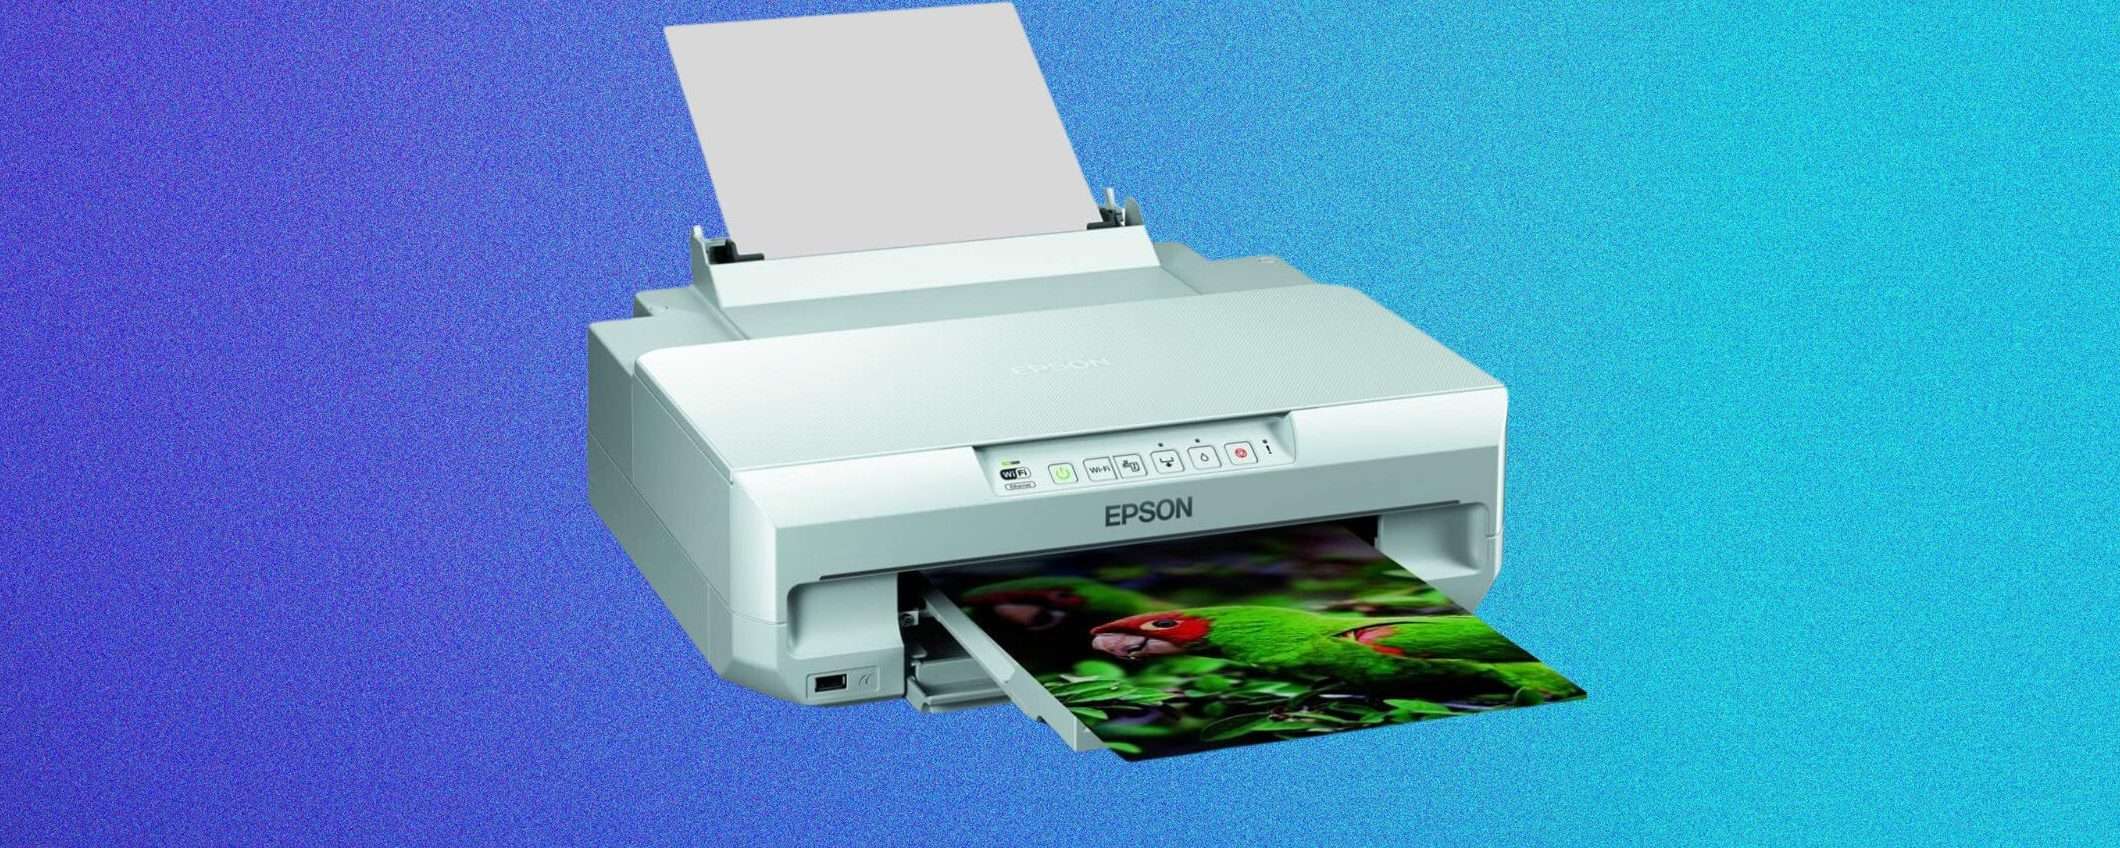 Epson Expression Photo XP-55: stampante fotografica in OTTIMO SCONTO